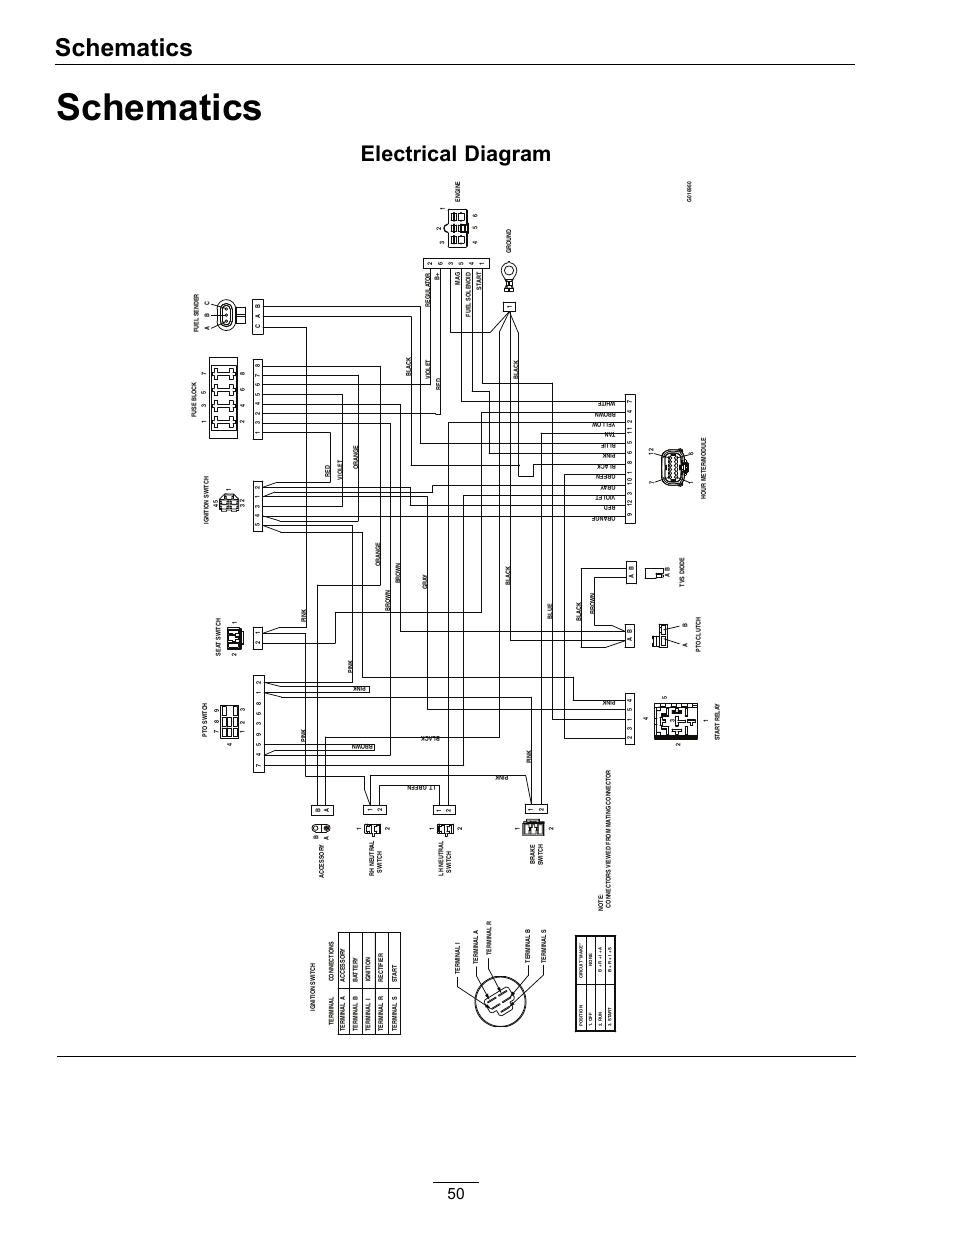 rp5-gm31 wiring diagram